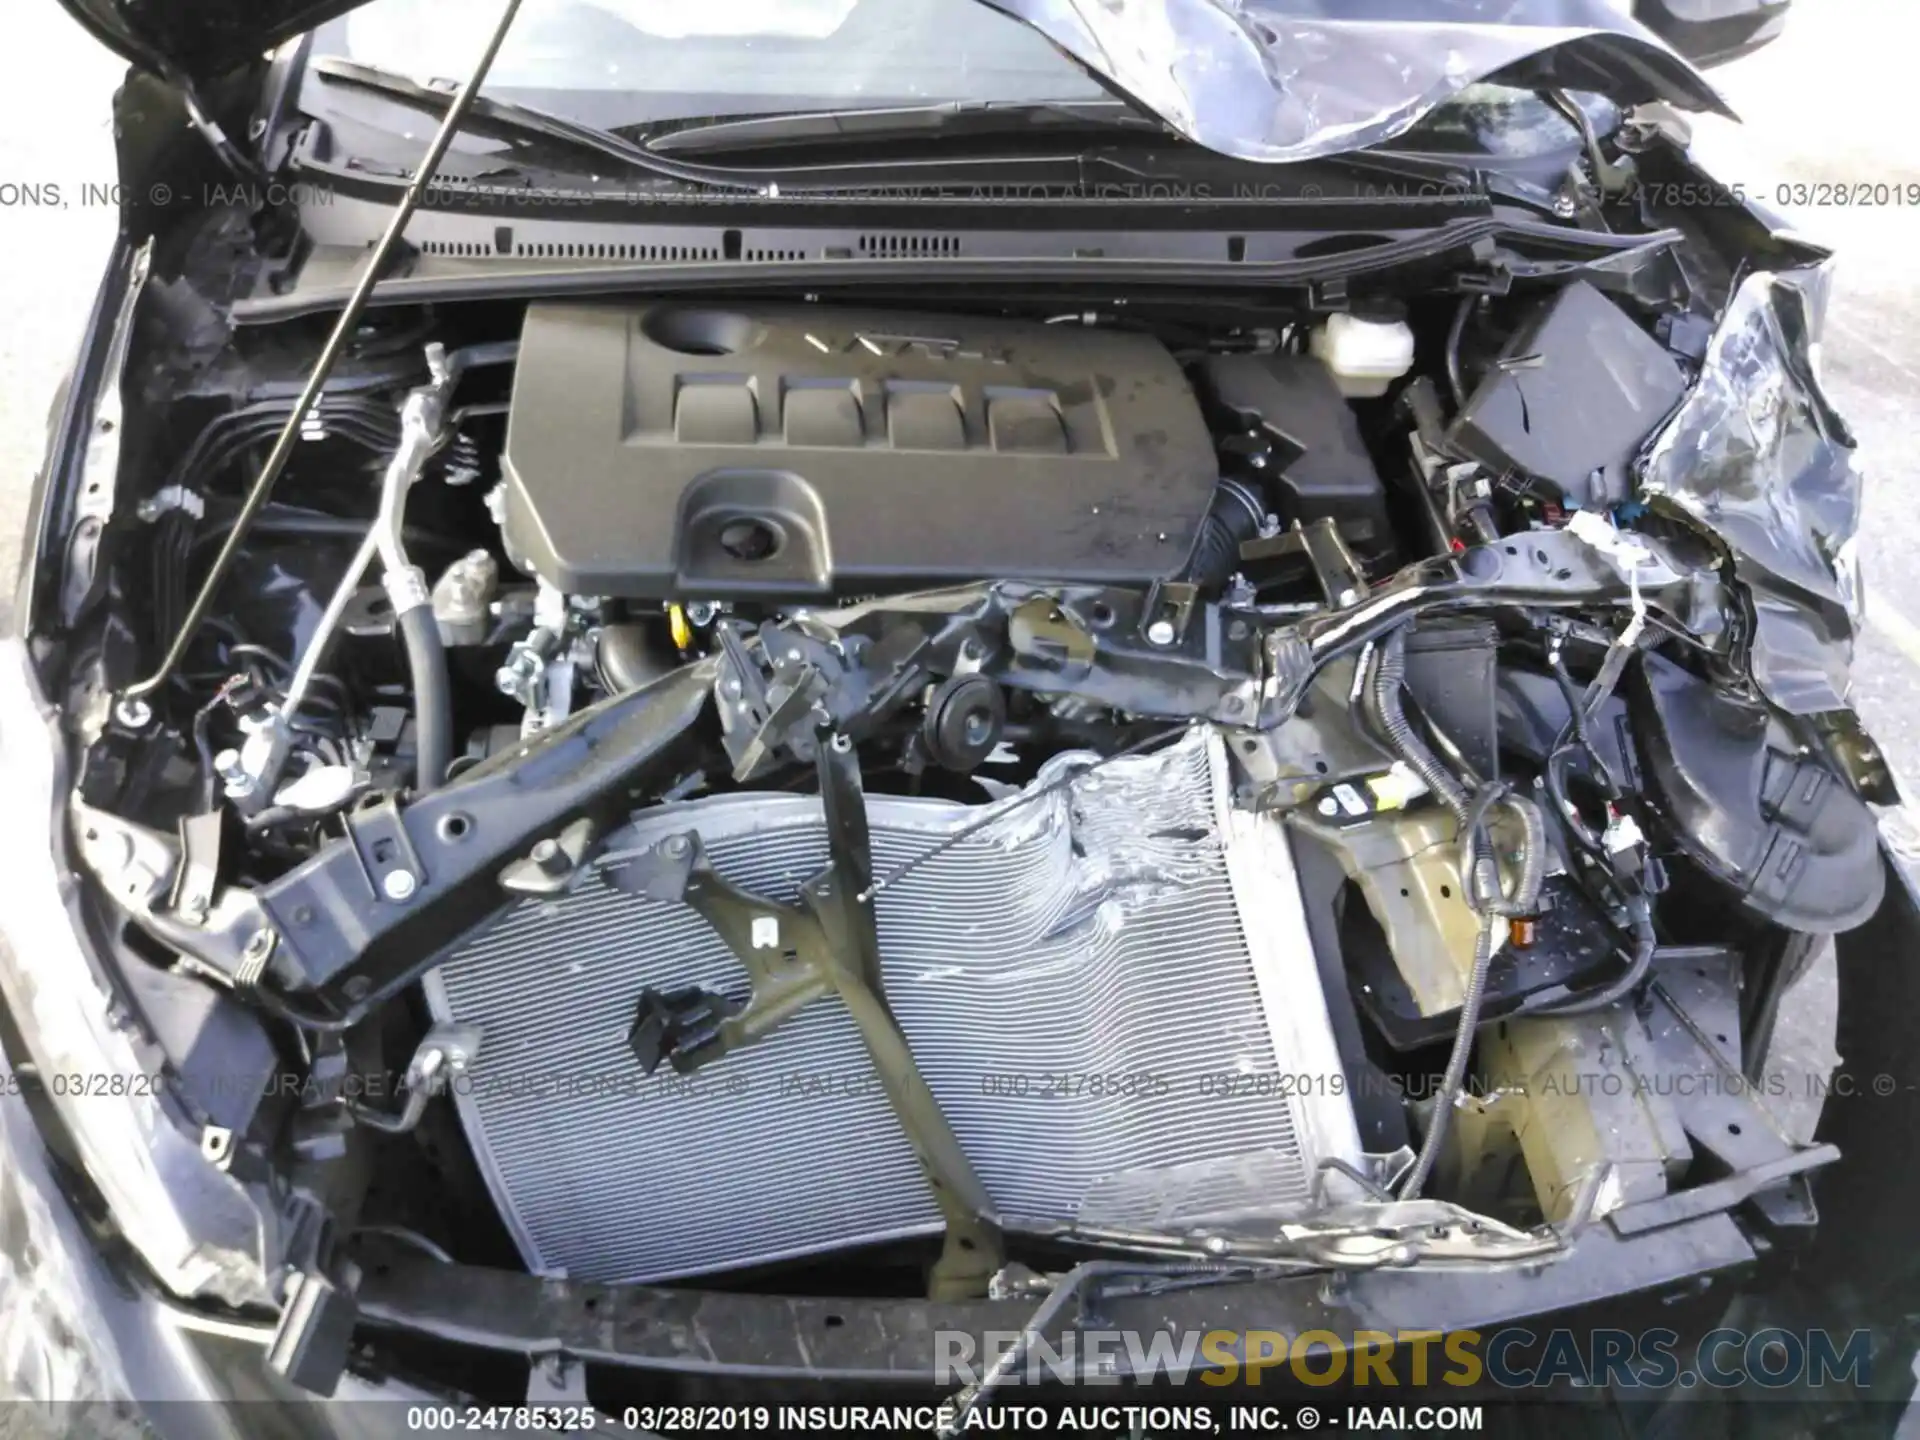 10 Photograph of a damaged car 5YFBURHE2KP898692 TOYOTA COROLLA 2019